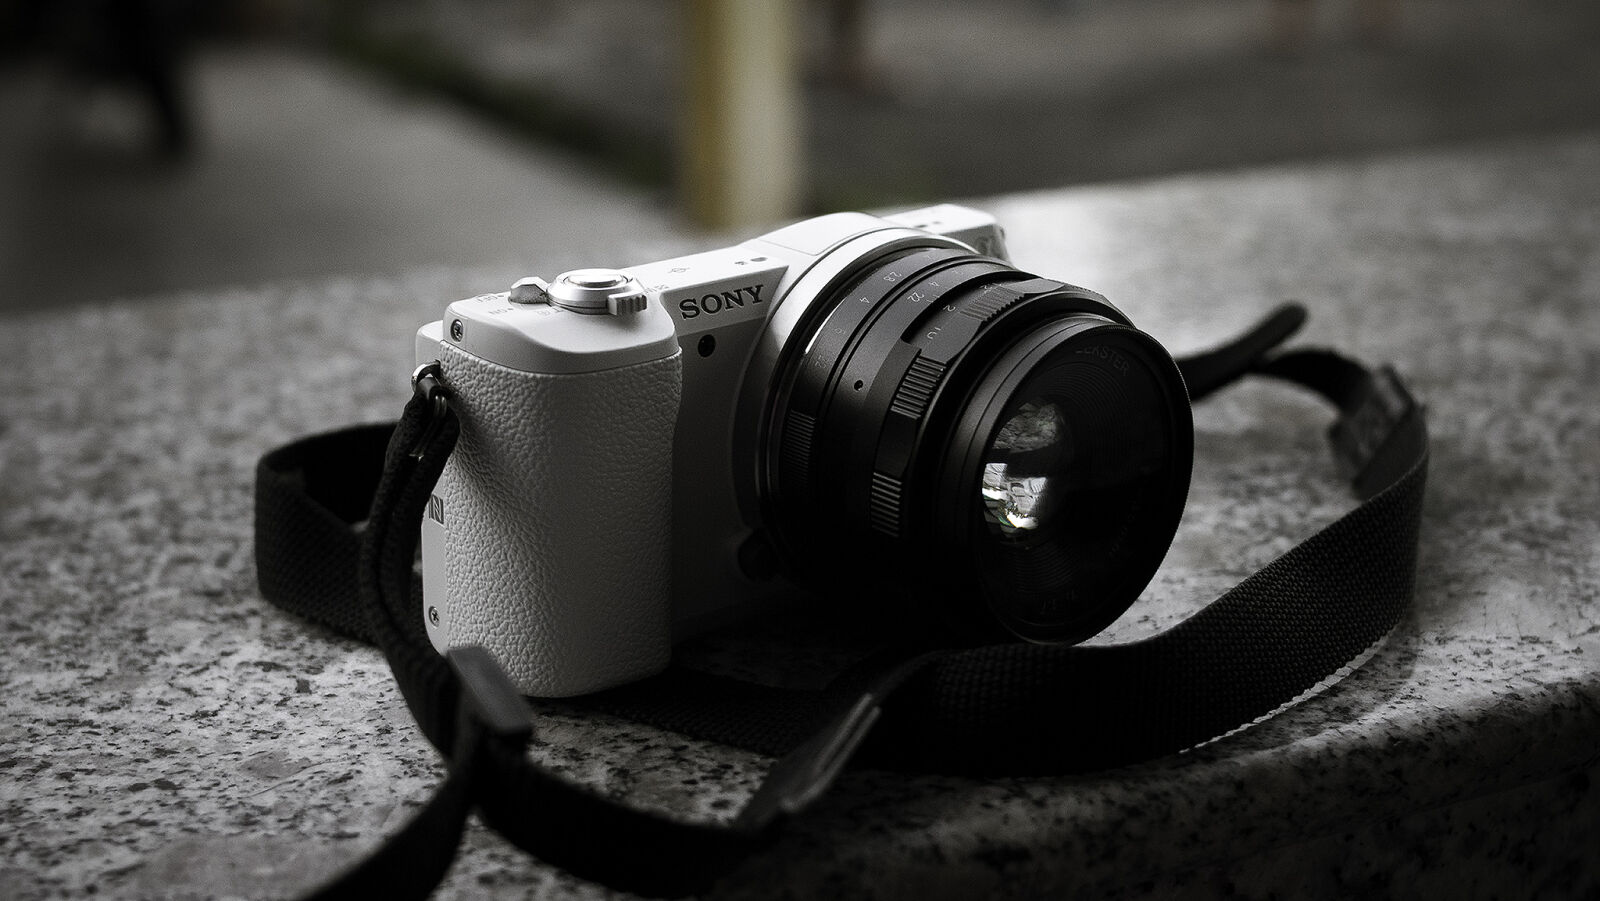 Nikon D3300 + Nikon AF-S DX Nikkor 35mm F1.8G sample photo. Sonya5100 photography